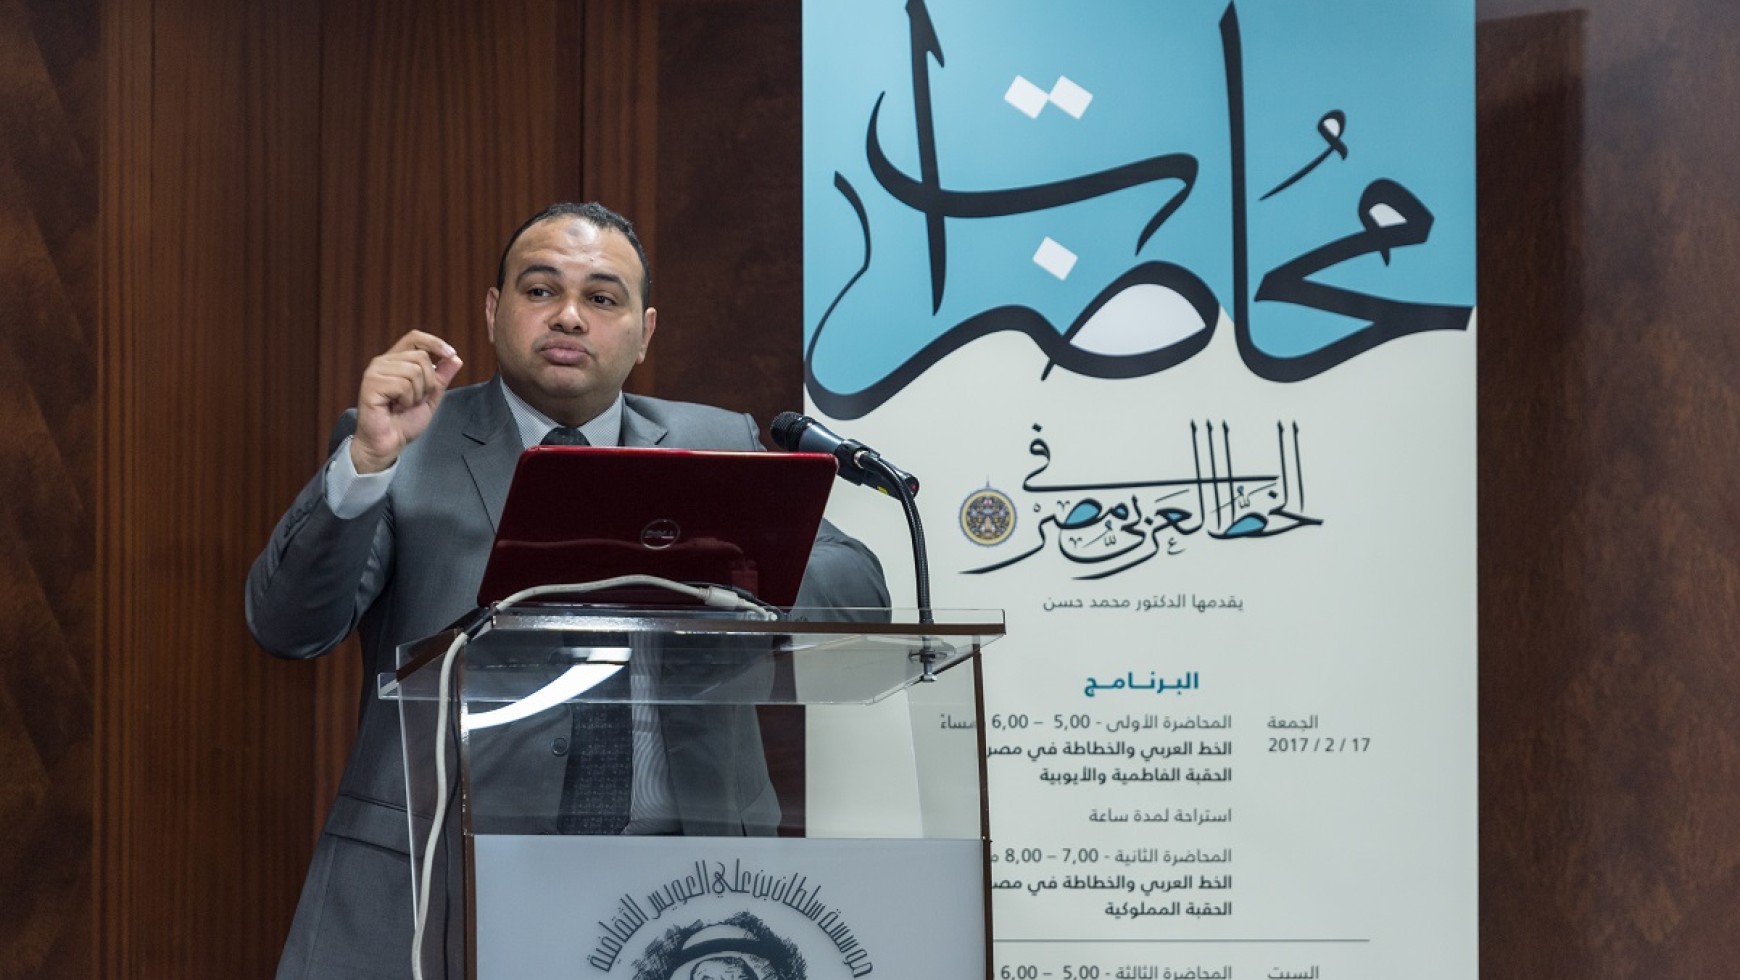 افتتاح محاضرات الخط العربي في مصر